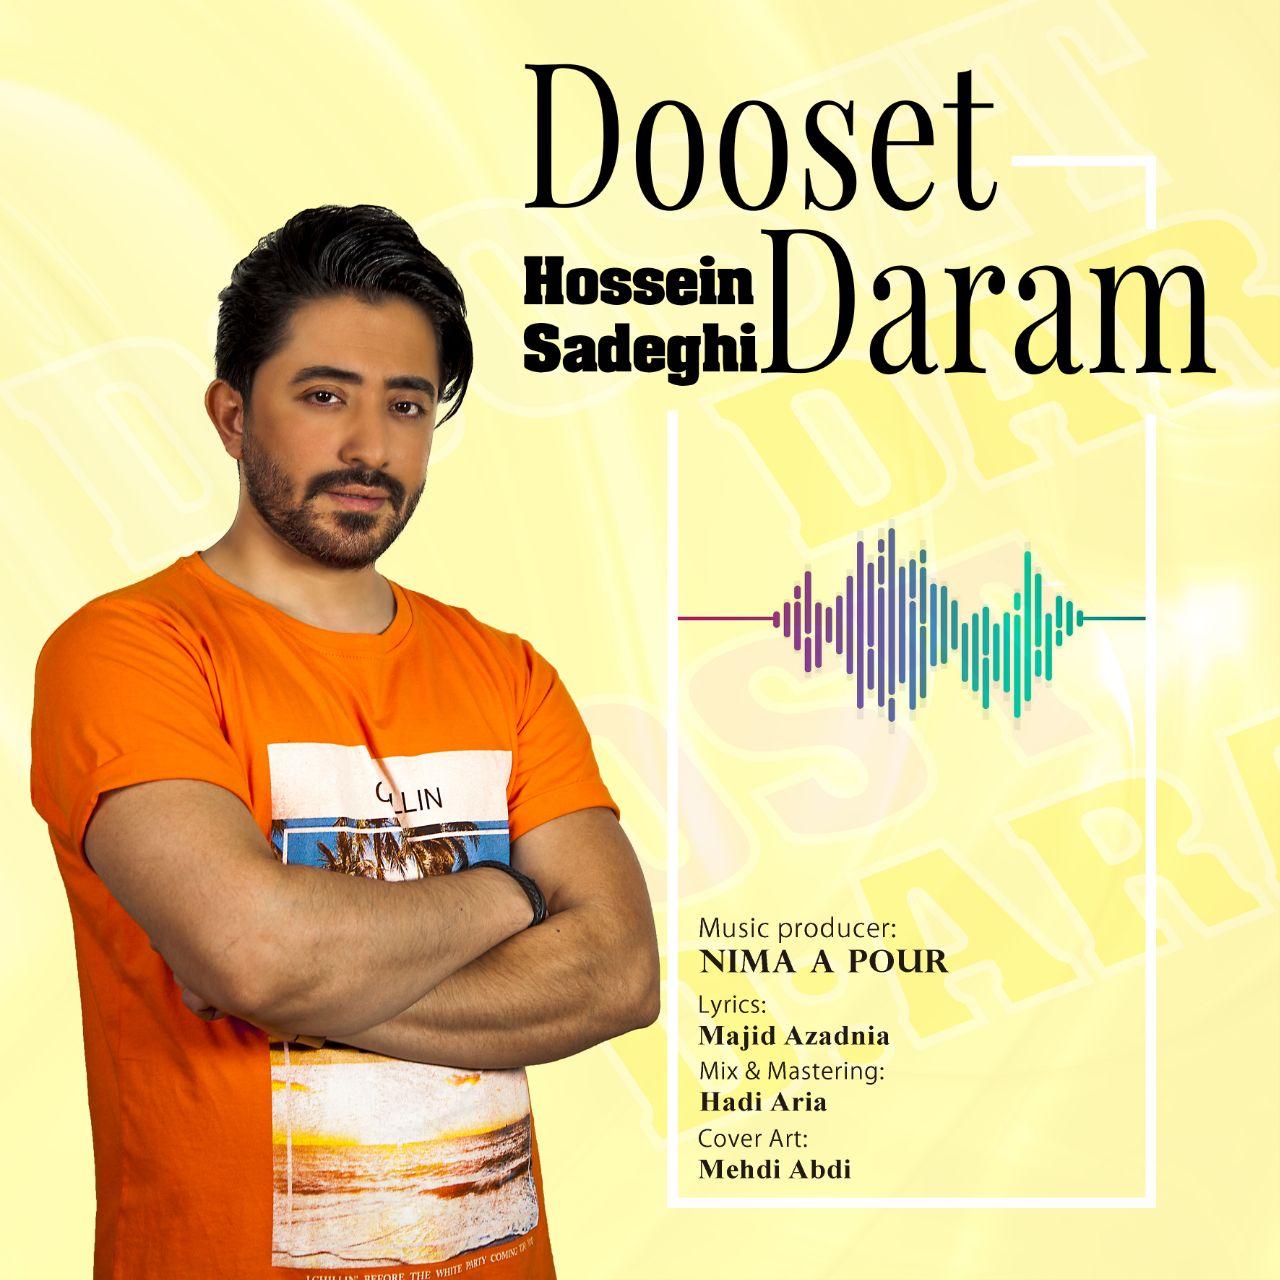 Hossein Sadeghi – Dooset Daram